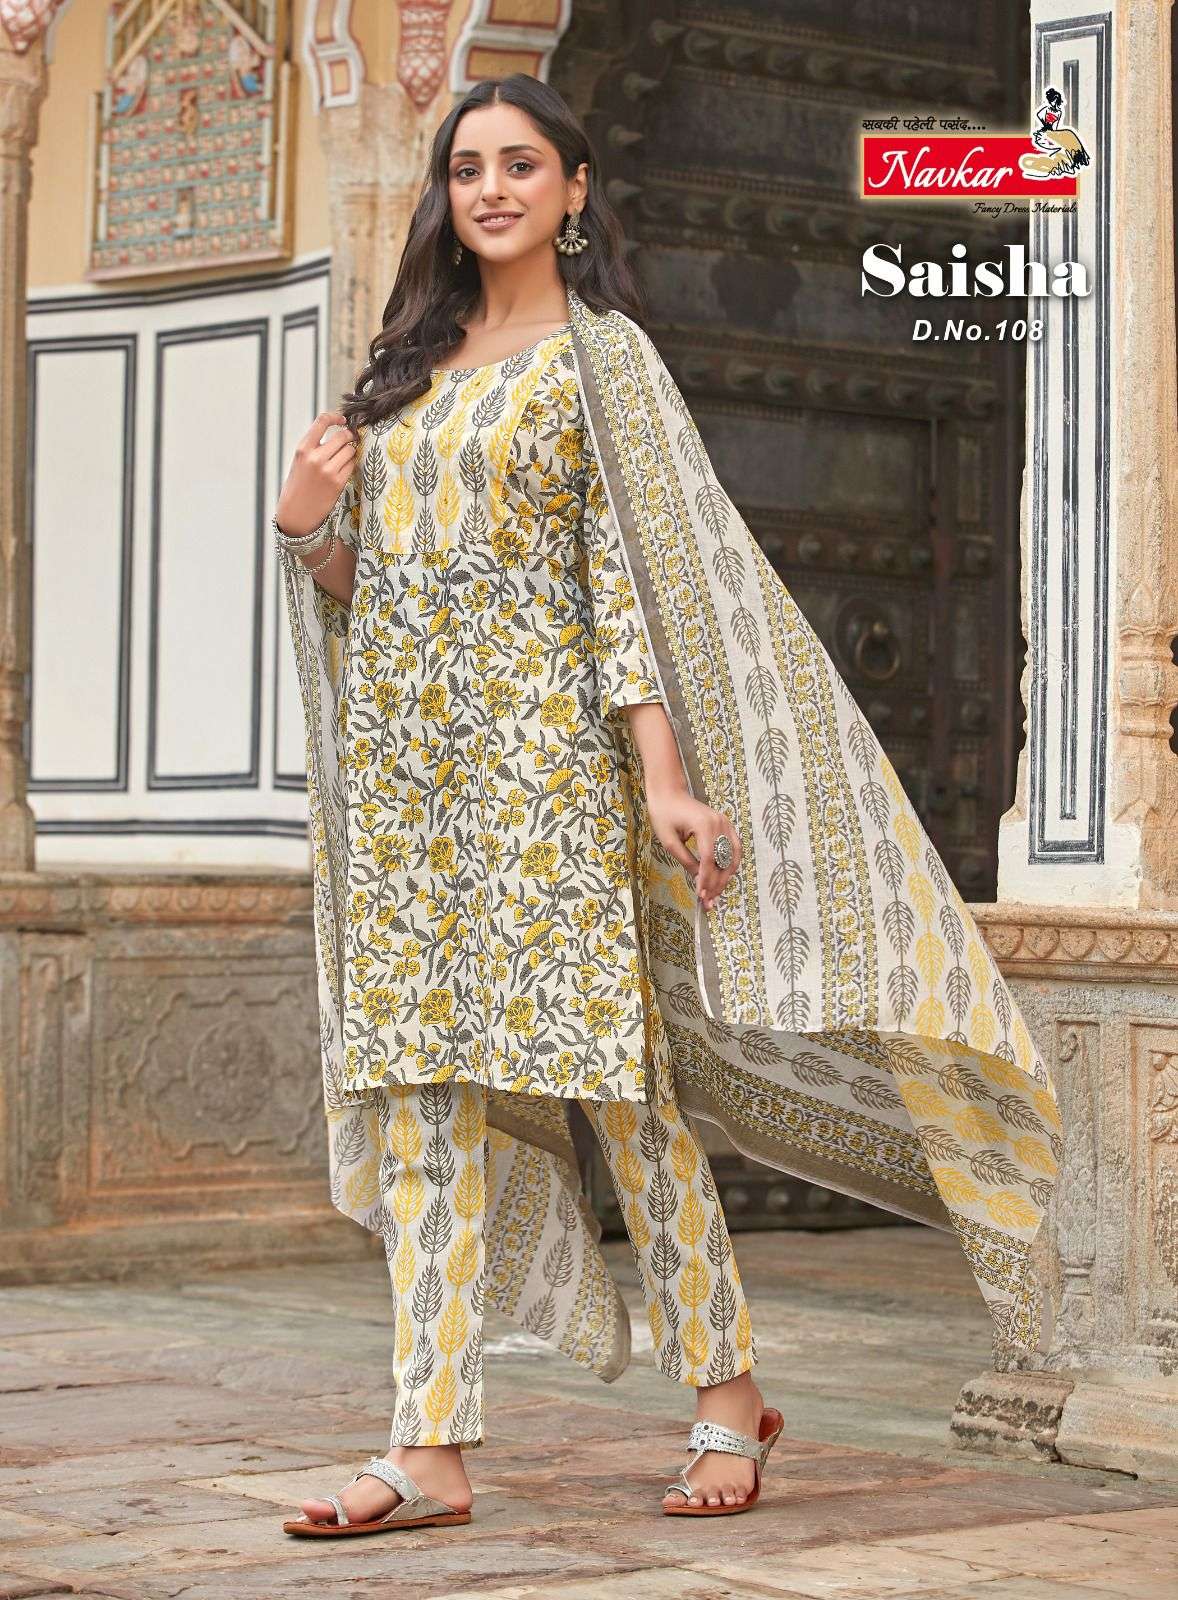 navkar saisha 101-110 series cotton designer salwar kameez catalogue wholesaler surat 